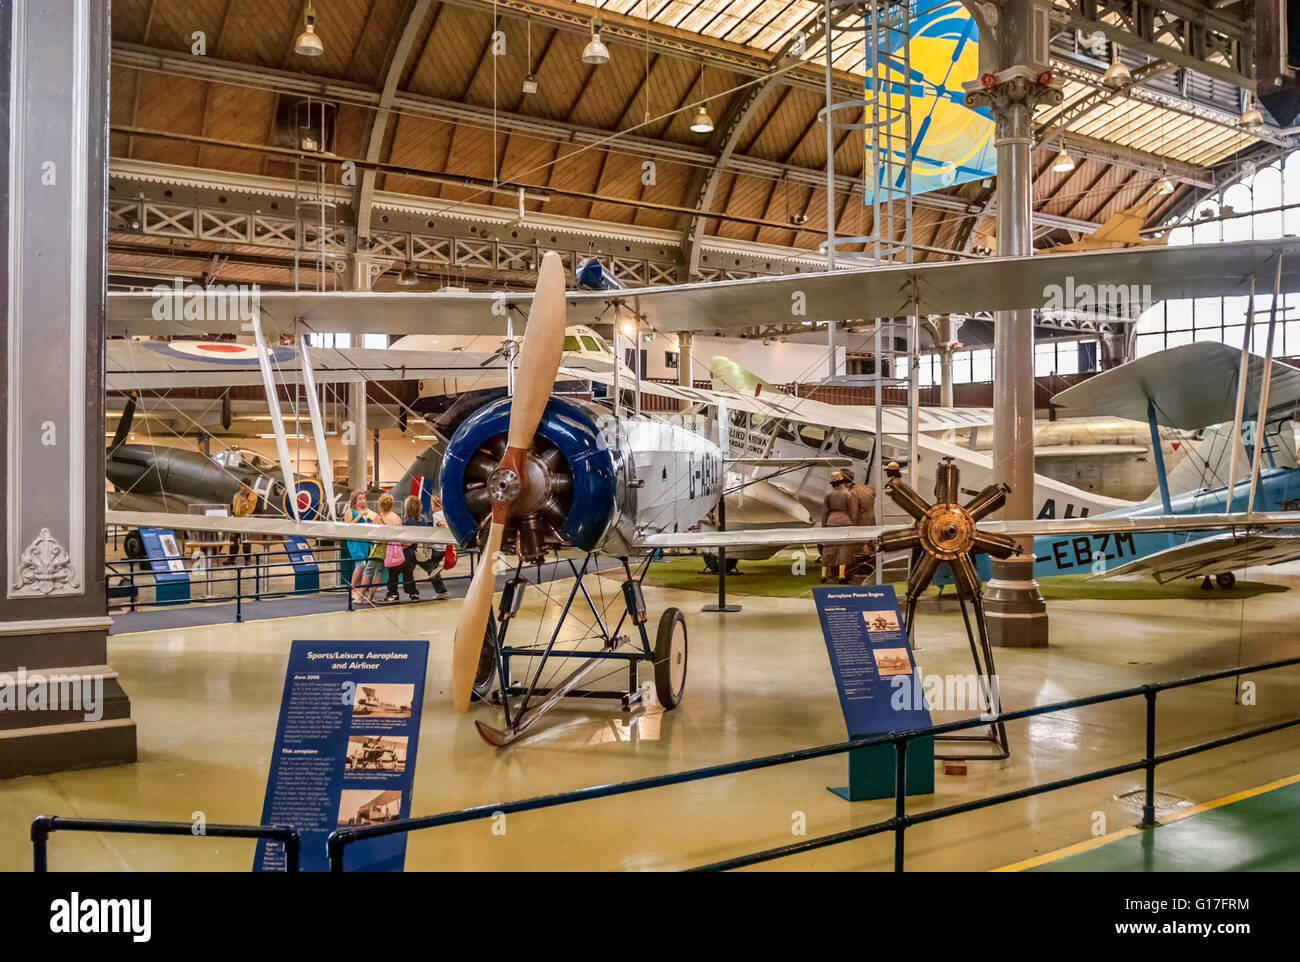 Flugzeuge auf Anzeigen der Luftraum & Halle an das Museum of Science and Industry in Manchester (MOSI), England. Stockfoto